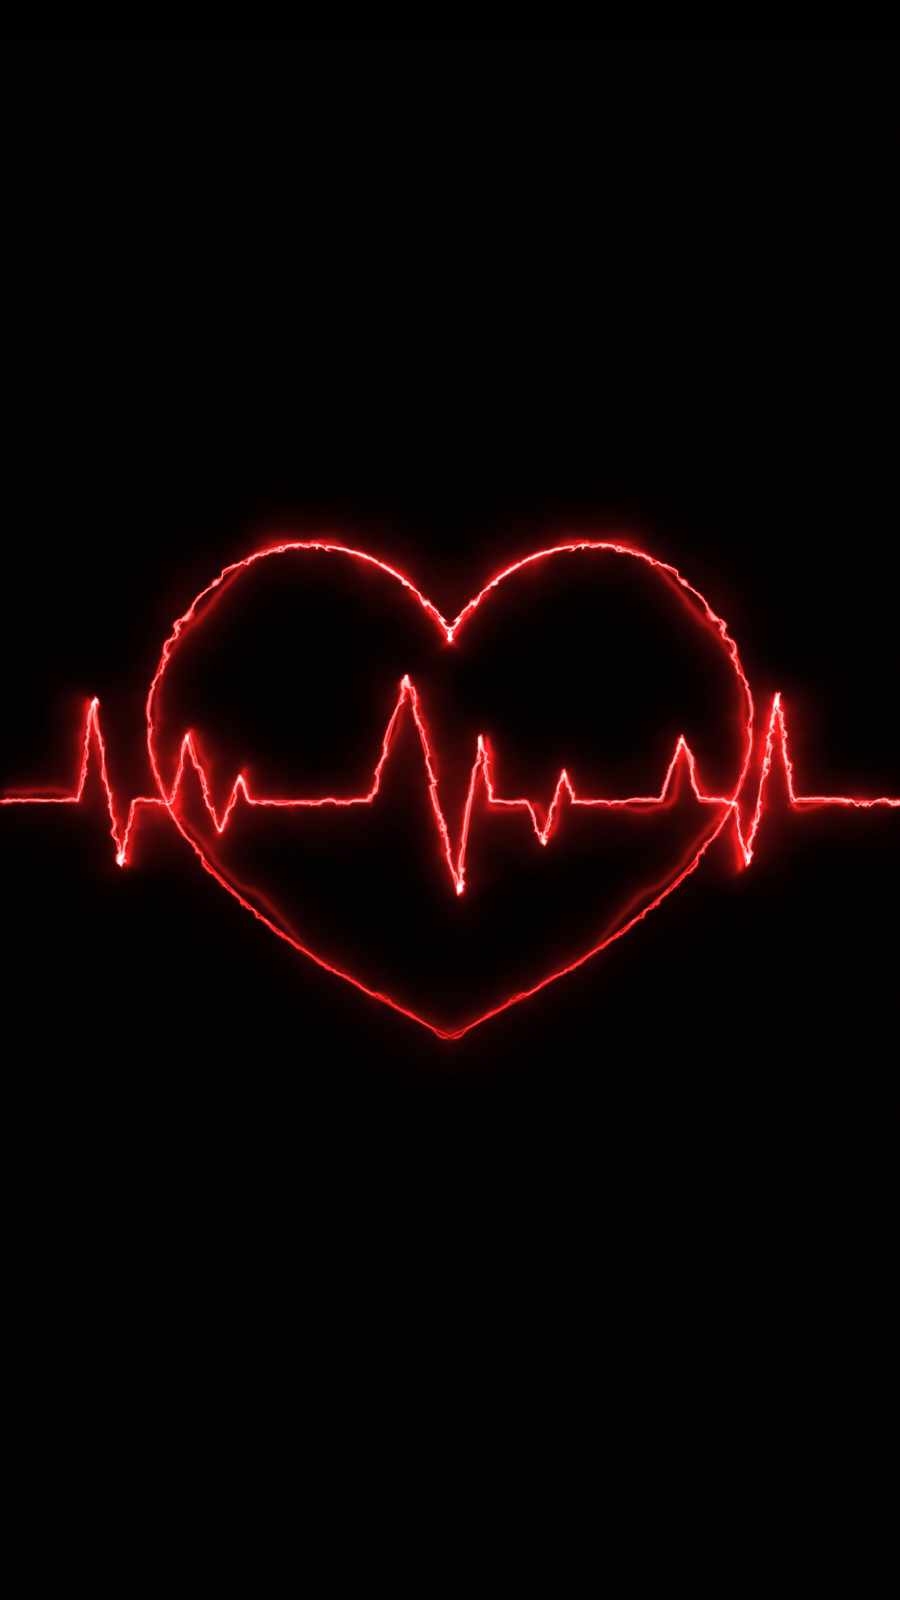 Love Heart Beats IPhone Wallpaper Wallpaper, iPhone Wallpaper